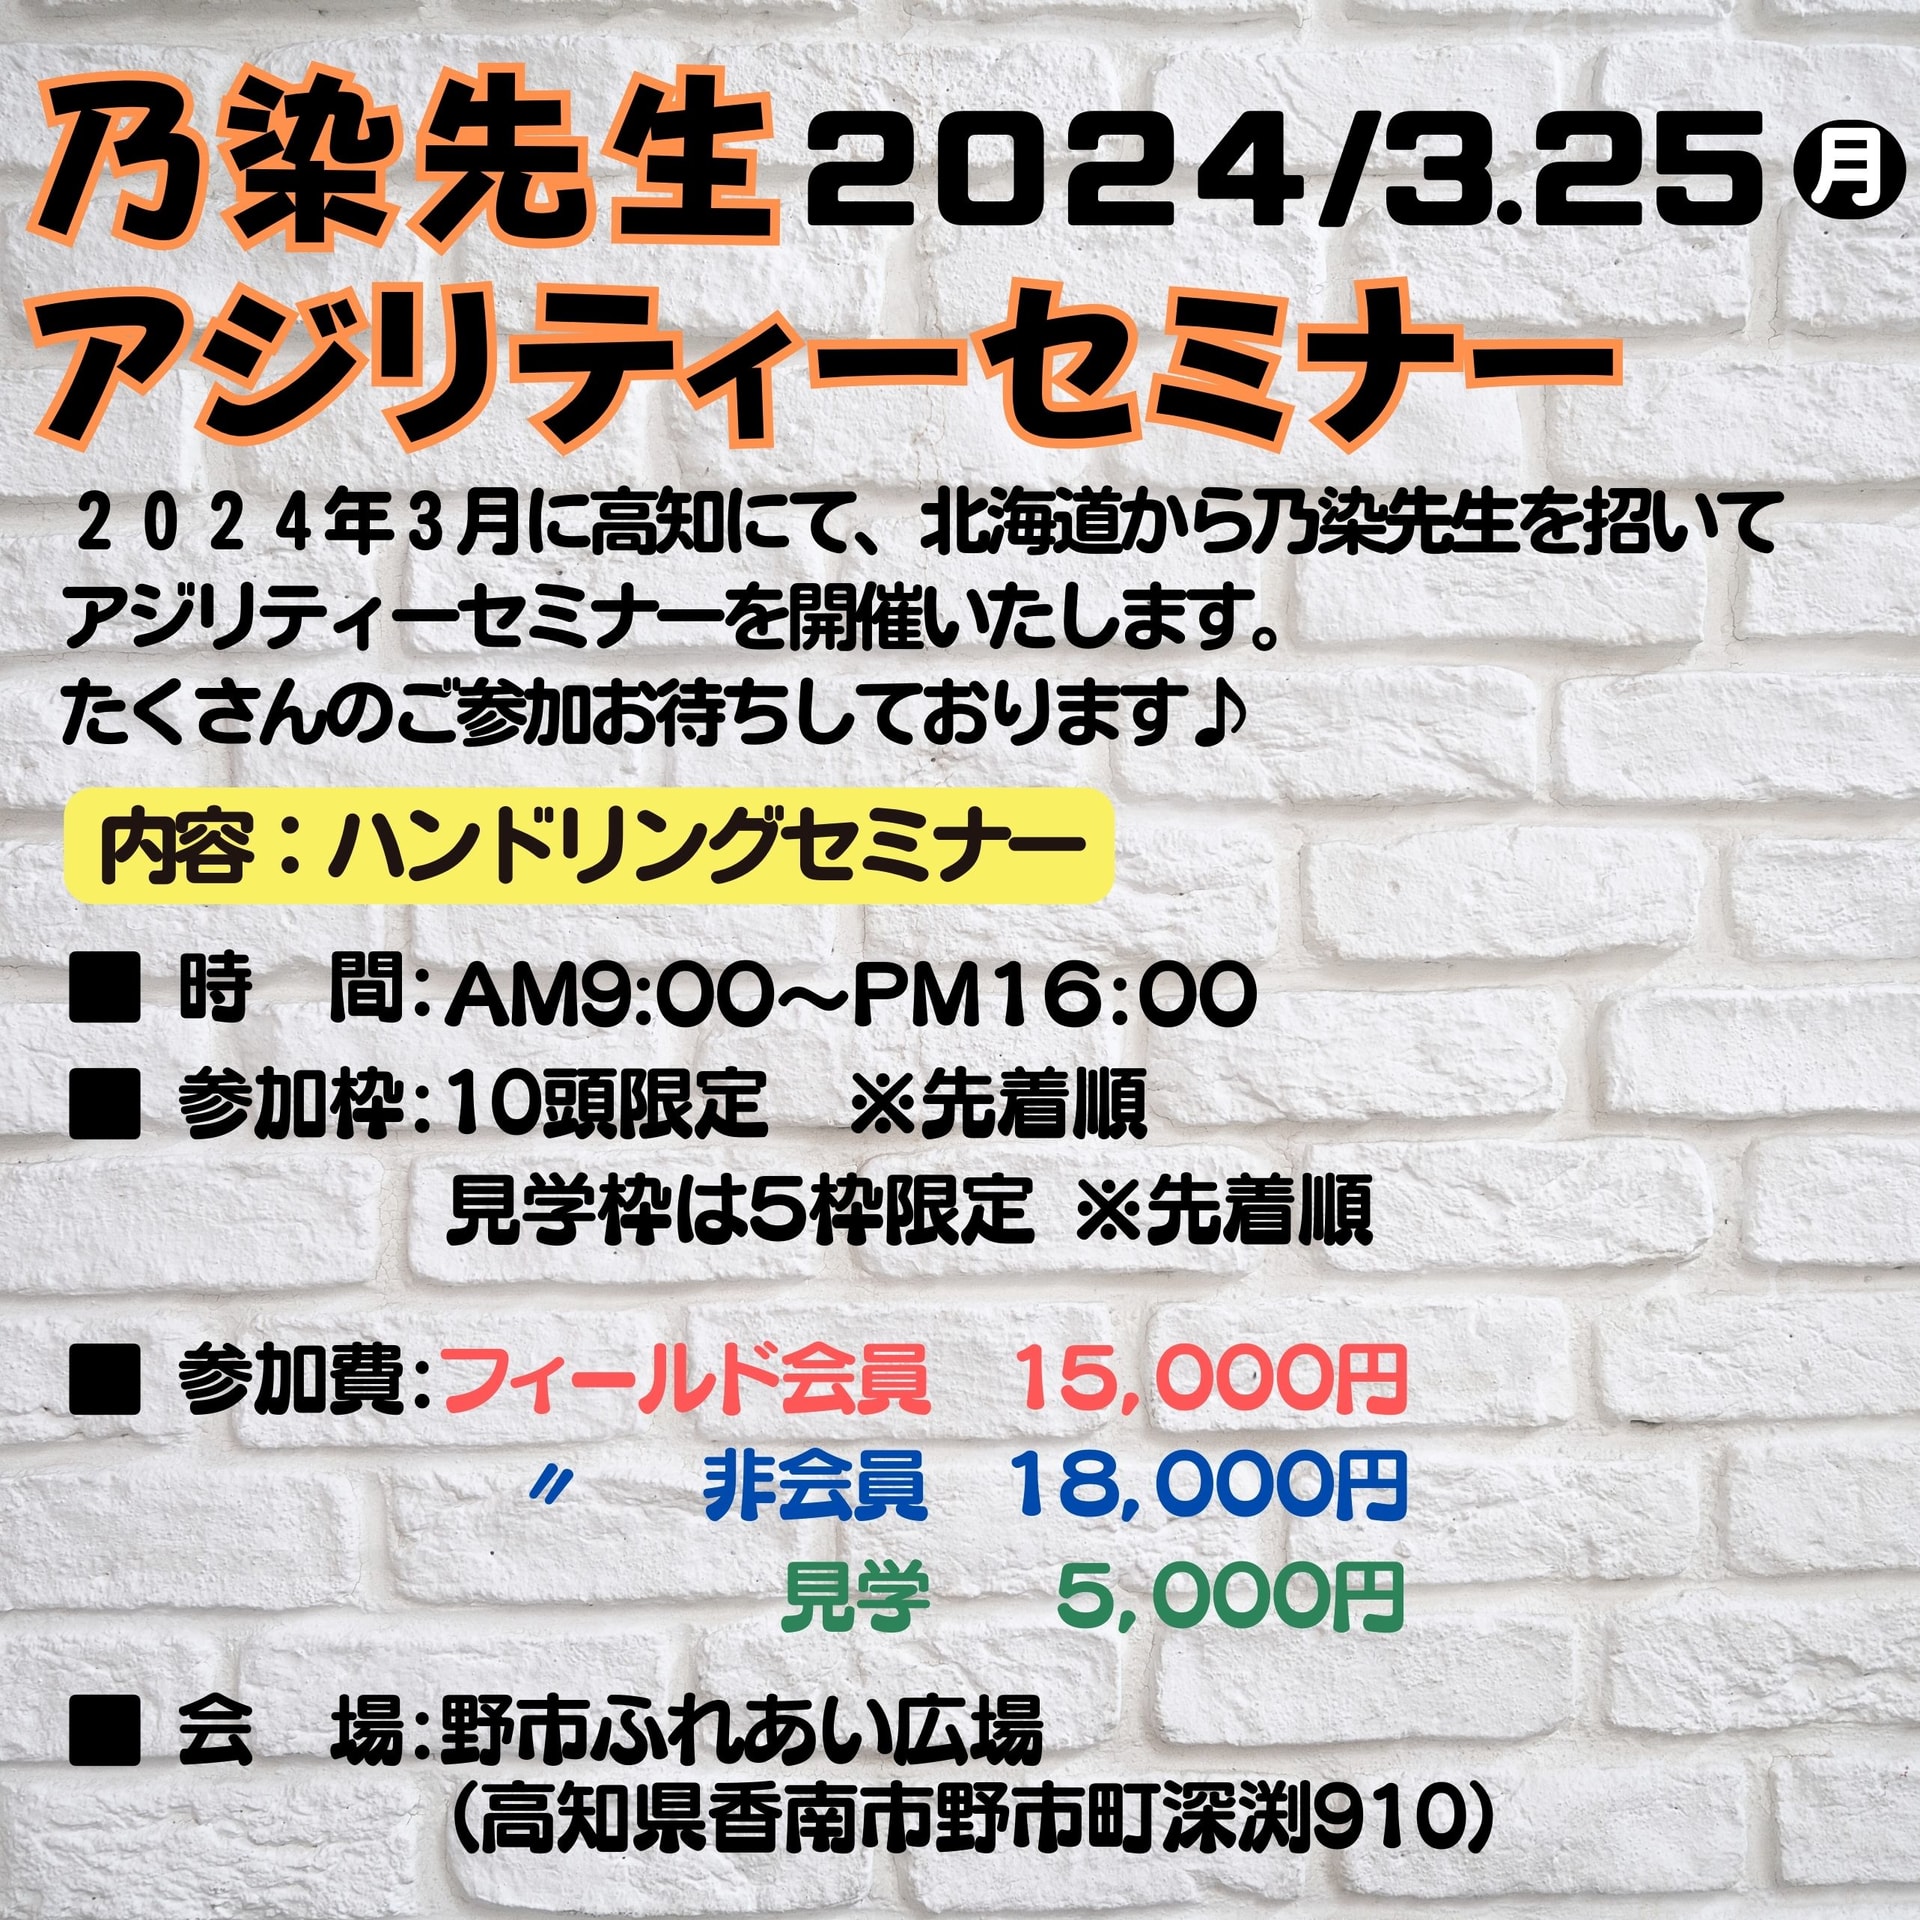 2024年3月25日(月)乃染先生アジリティーセミナー開催!!